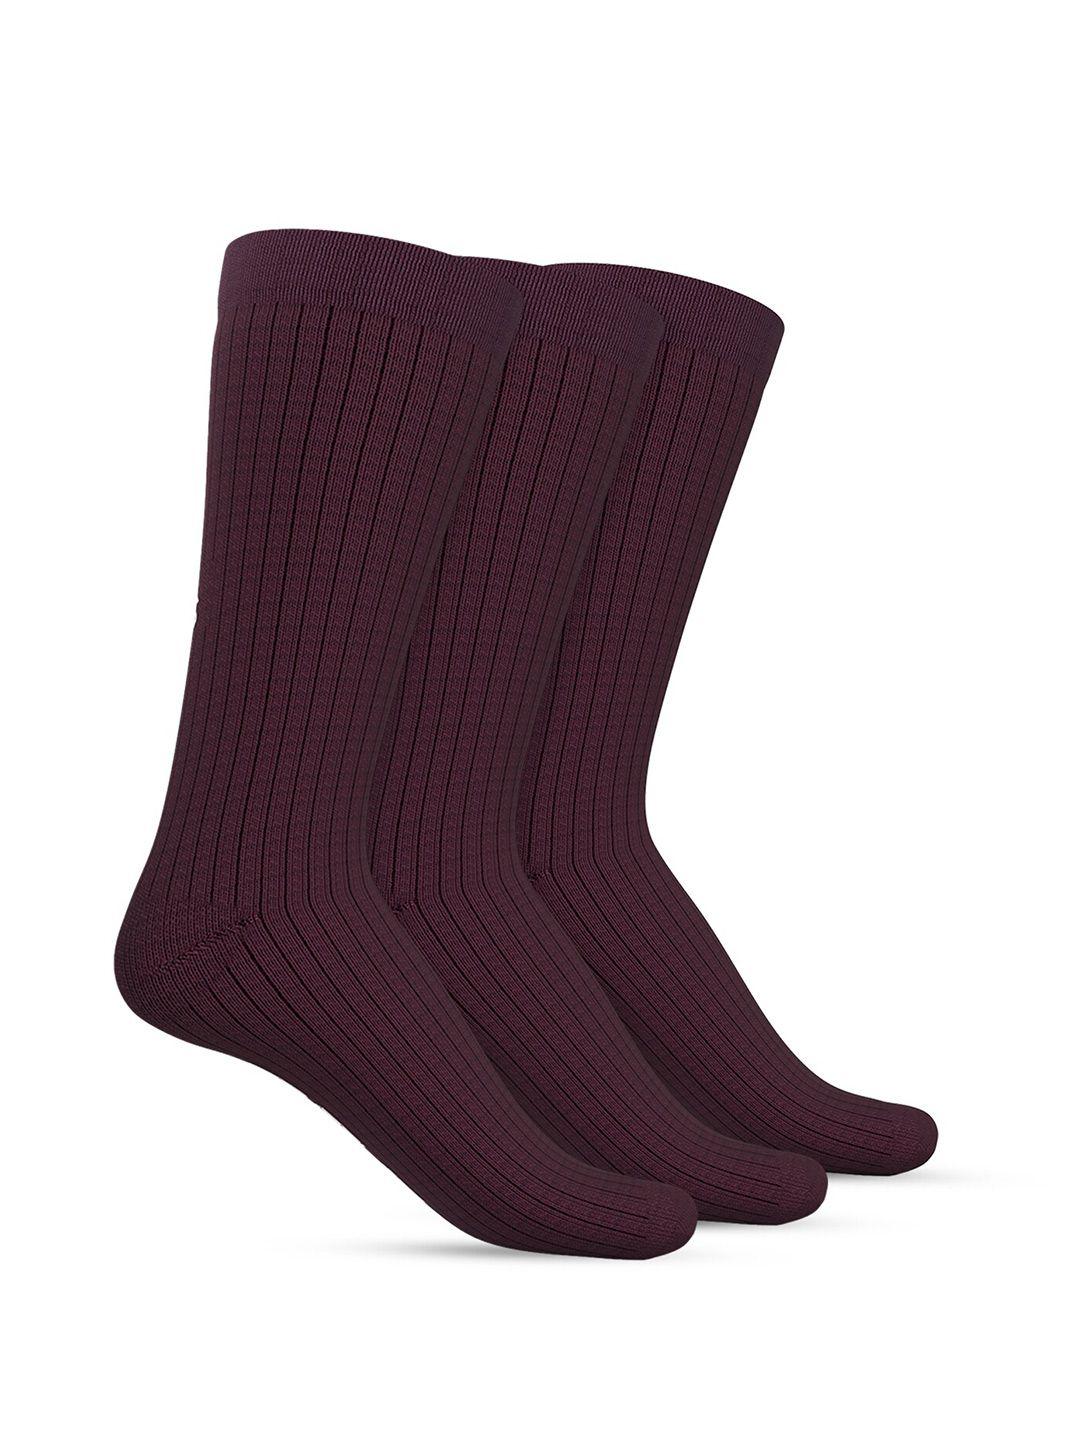 talkingsox unisex pack of 3 calf length socks